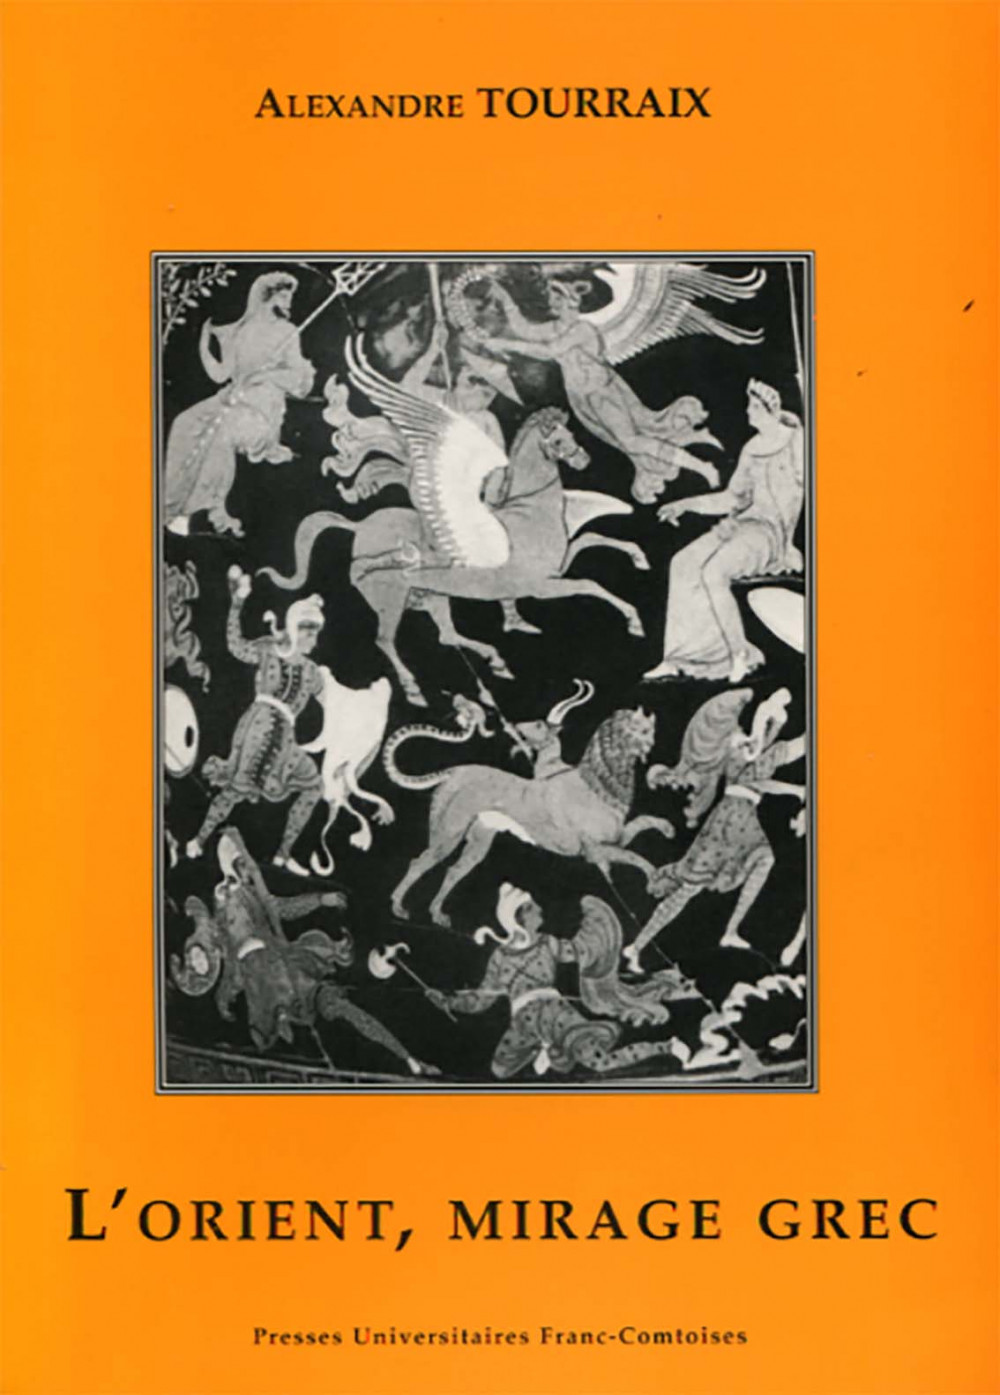 couverture de l'ouvrage l'Orient, mirage grec d'Alexandre TOURRAIX